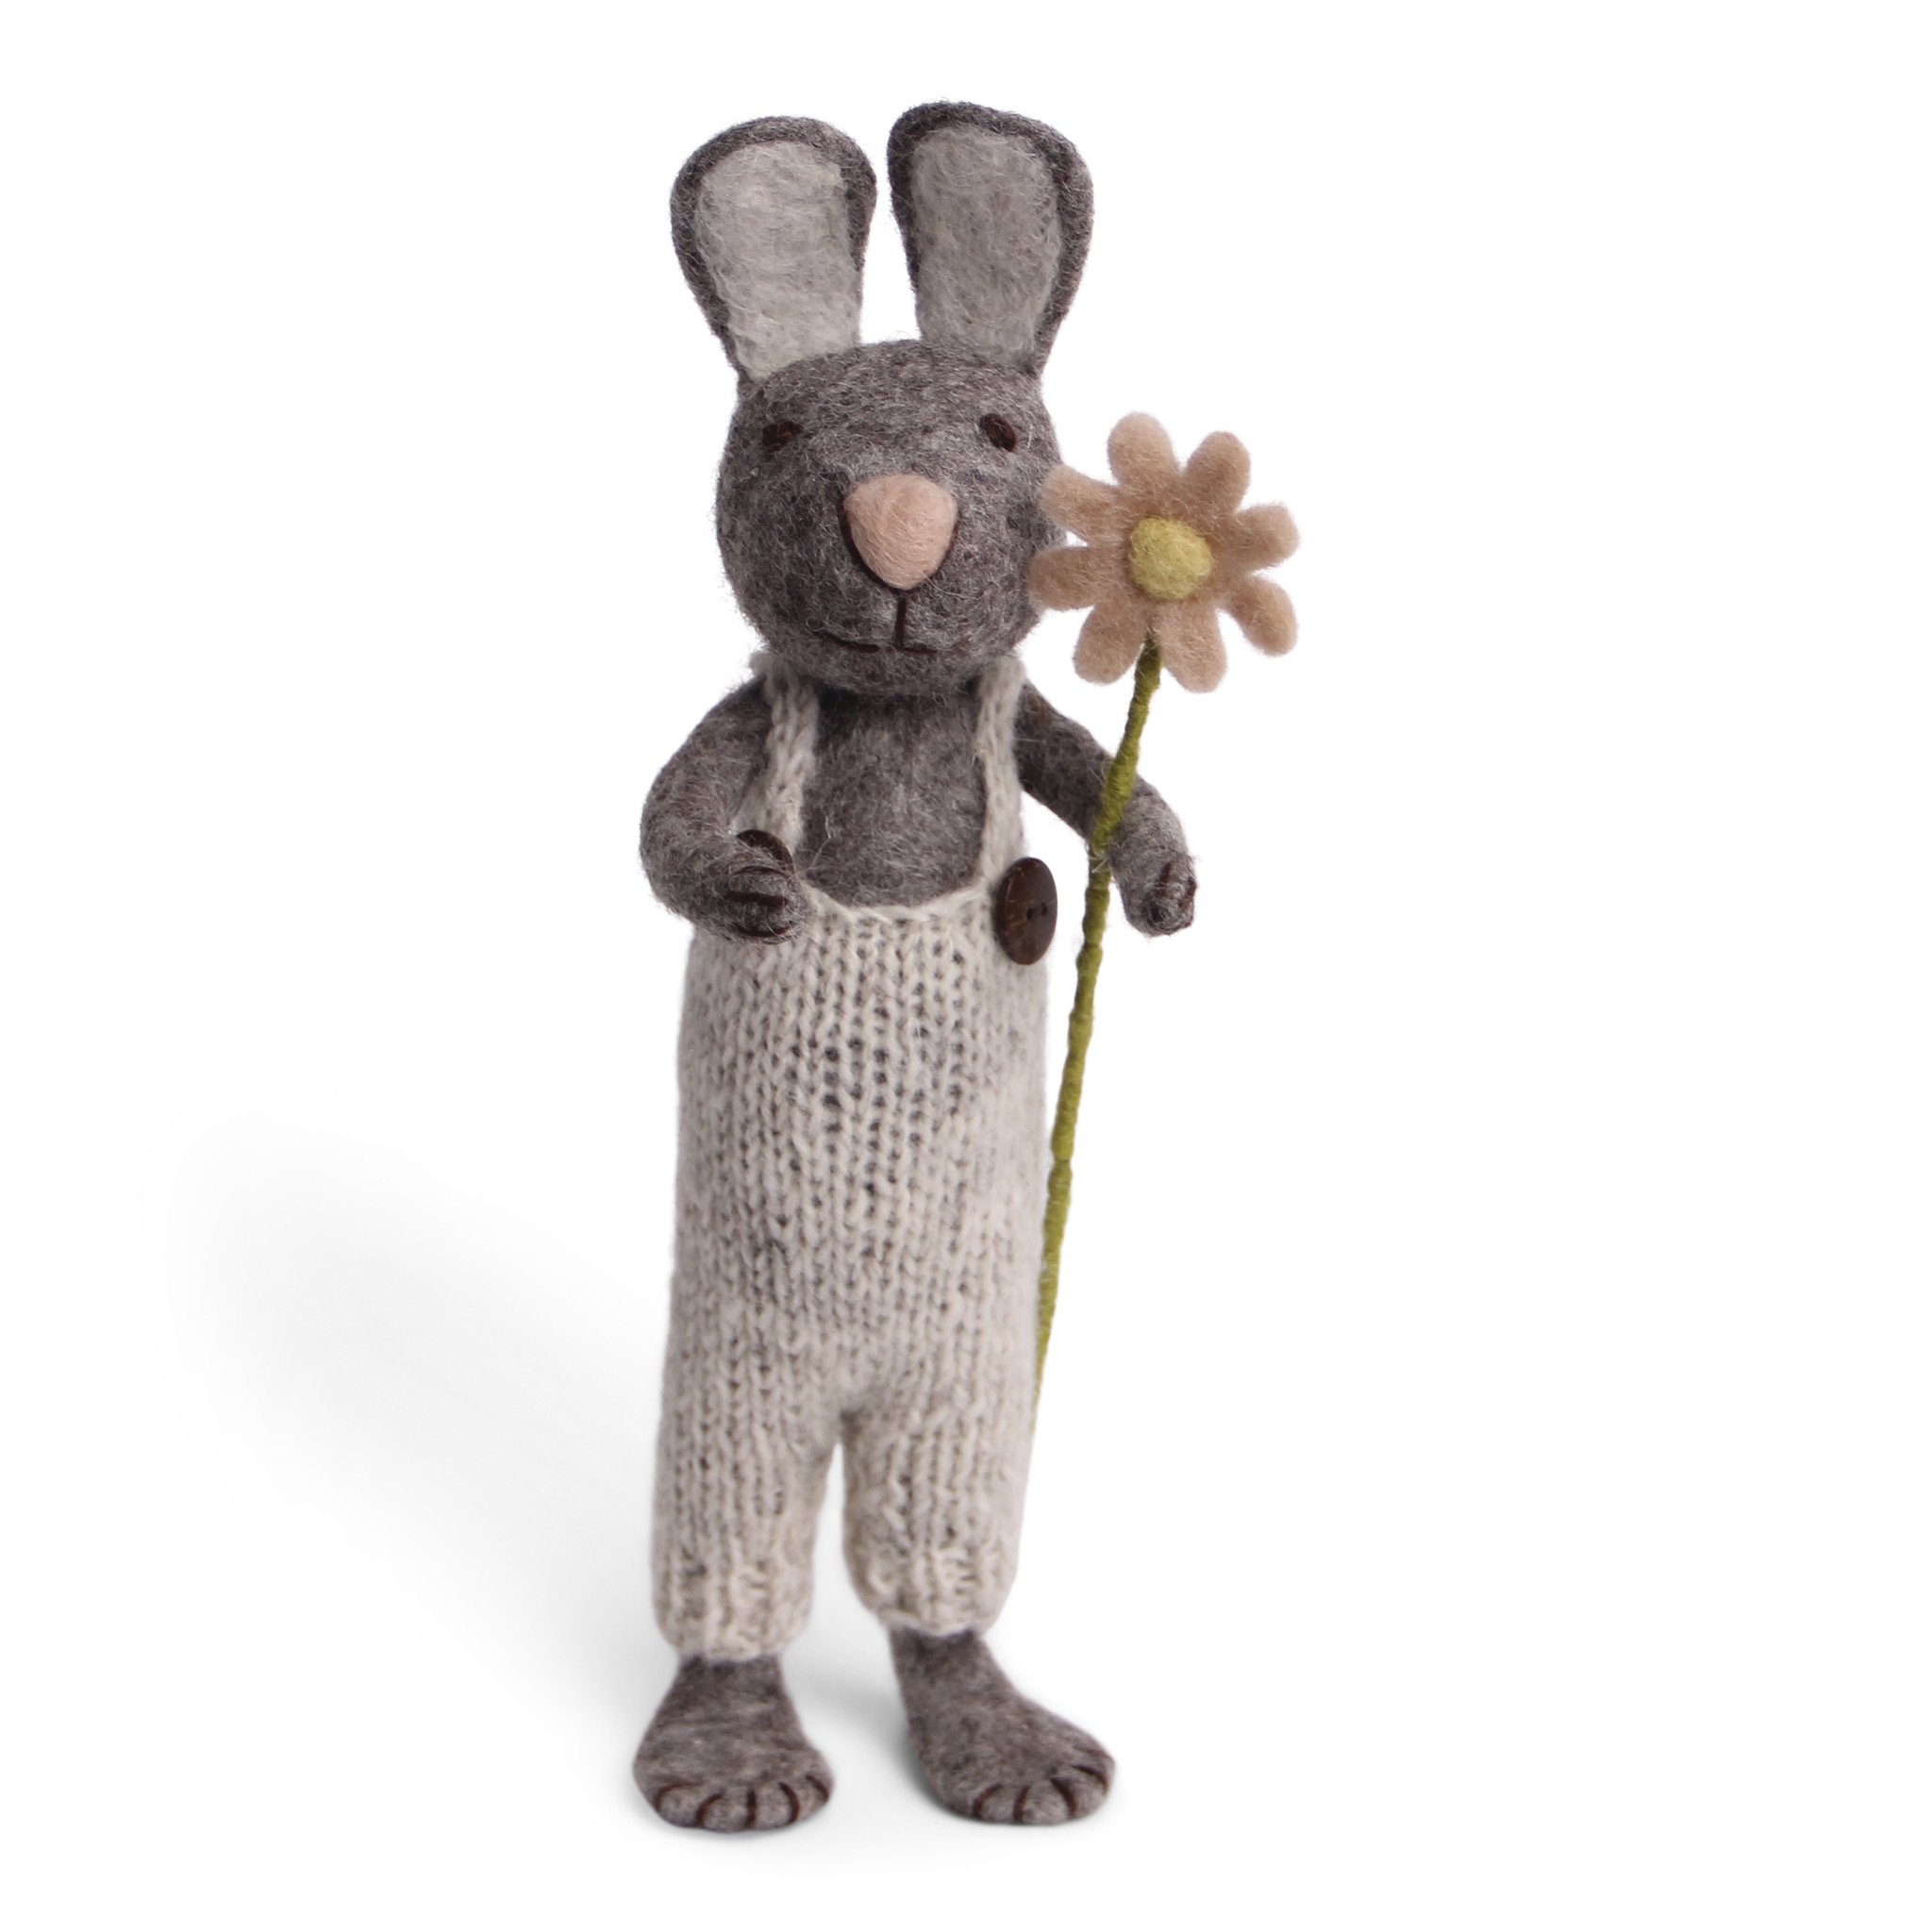 Stor gr kanin fra En Gry og Sif filtet - Med bukser og blomst.